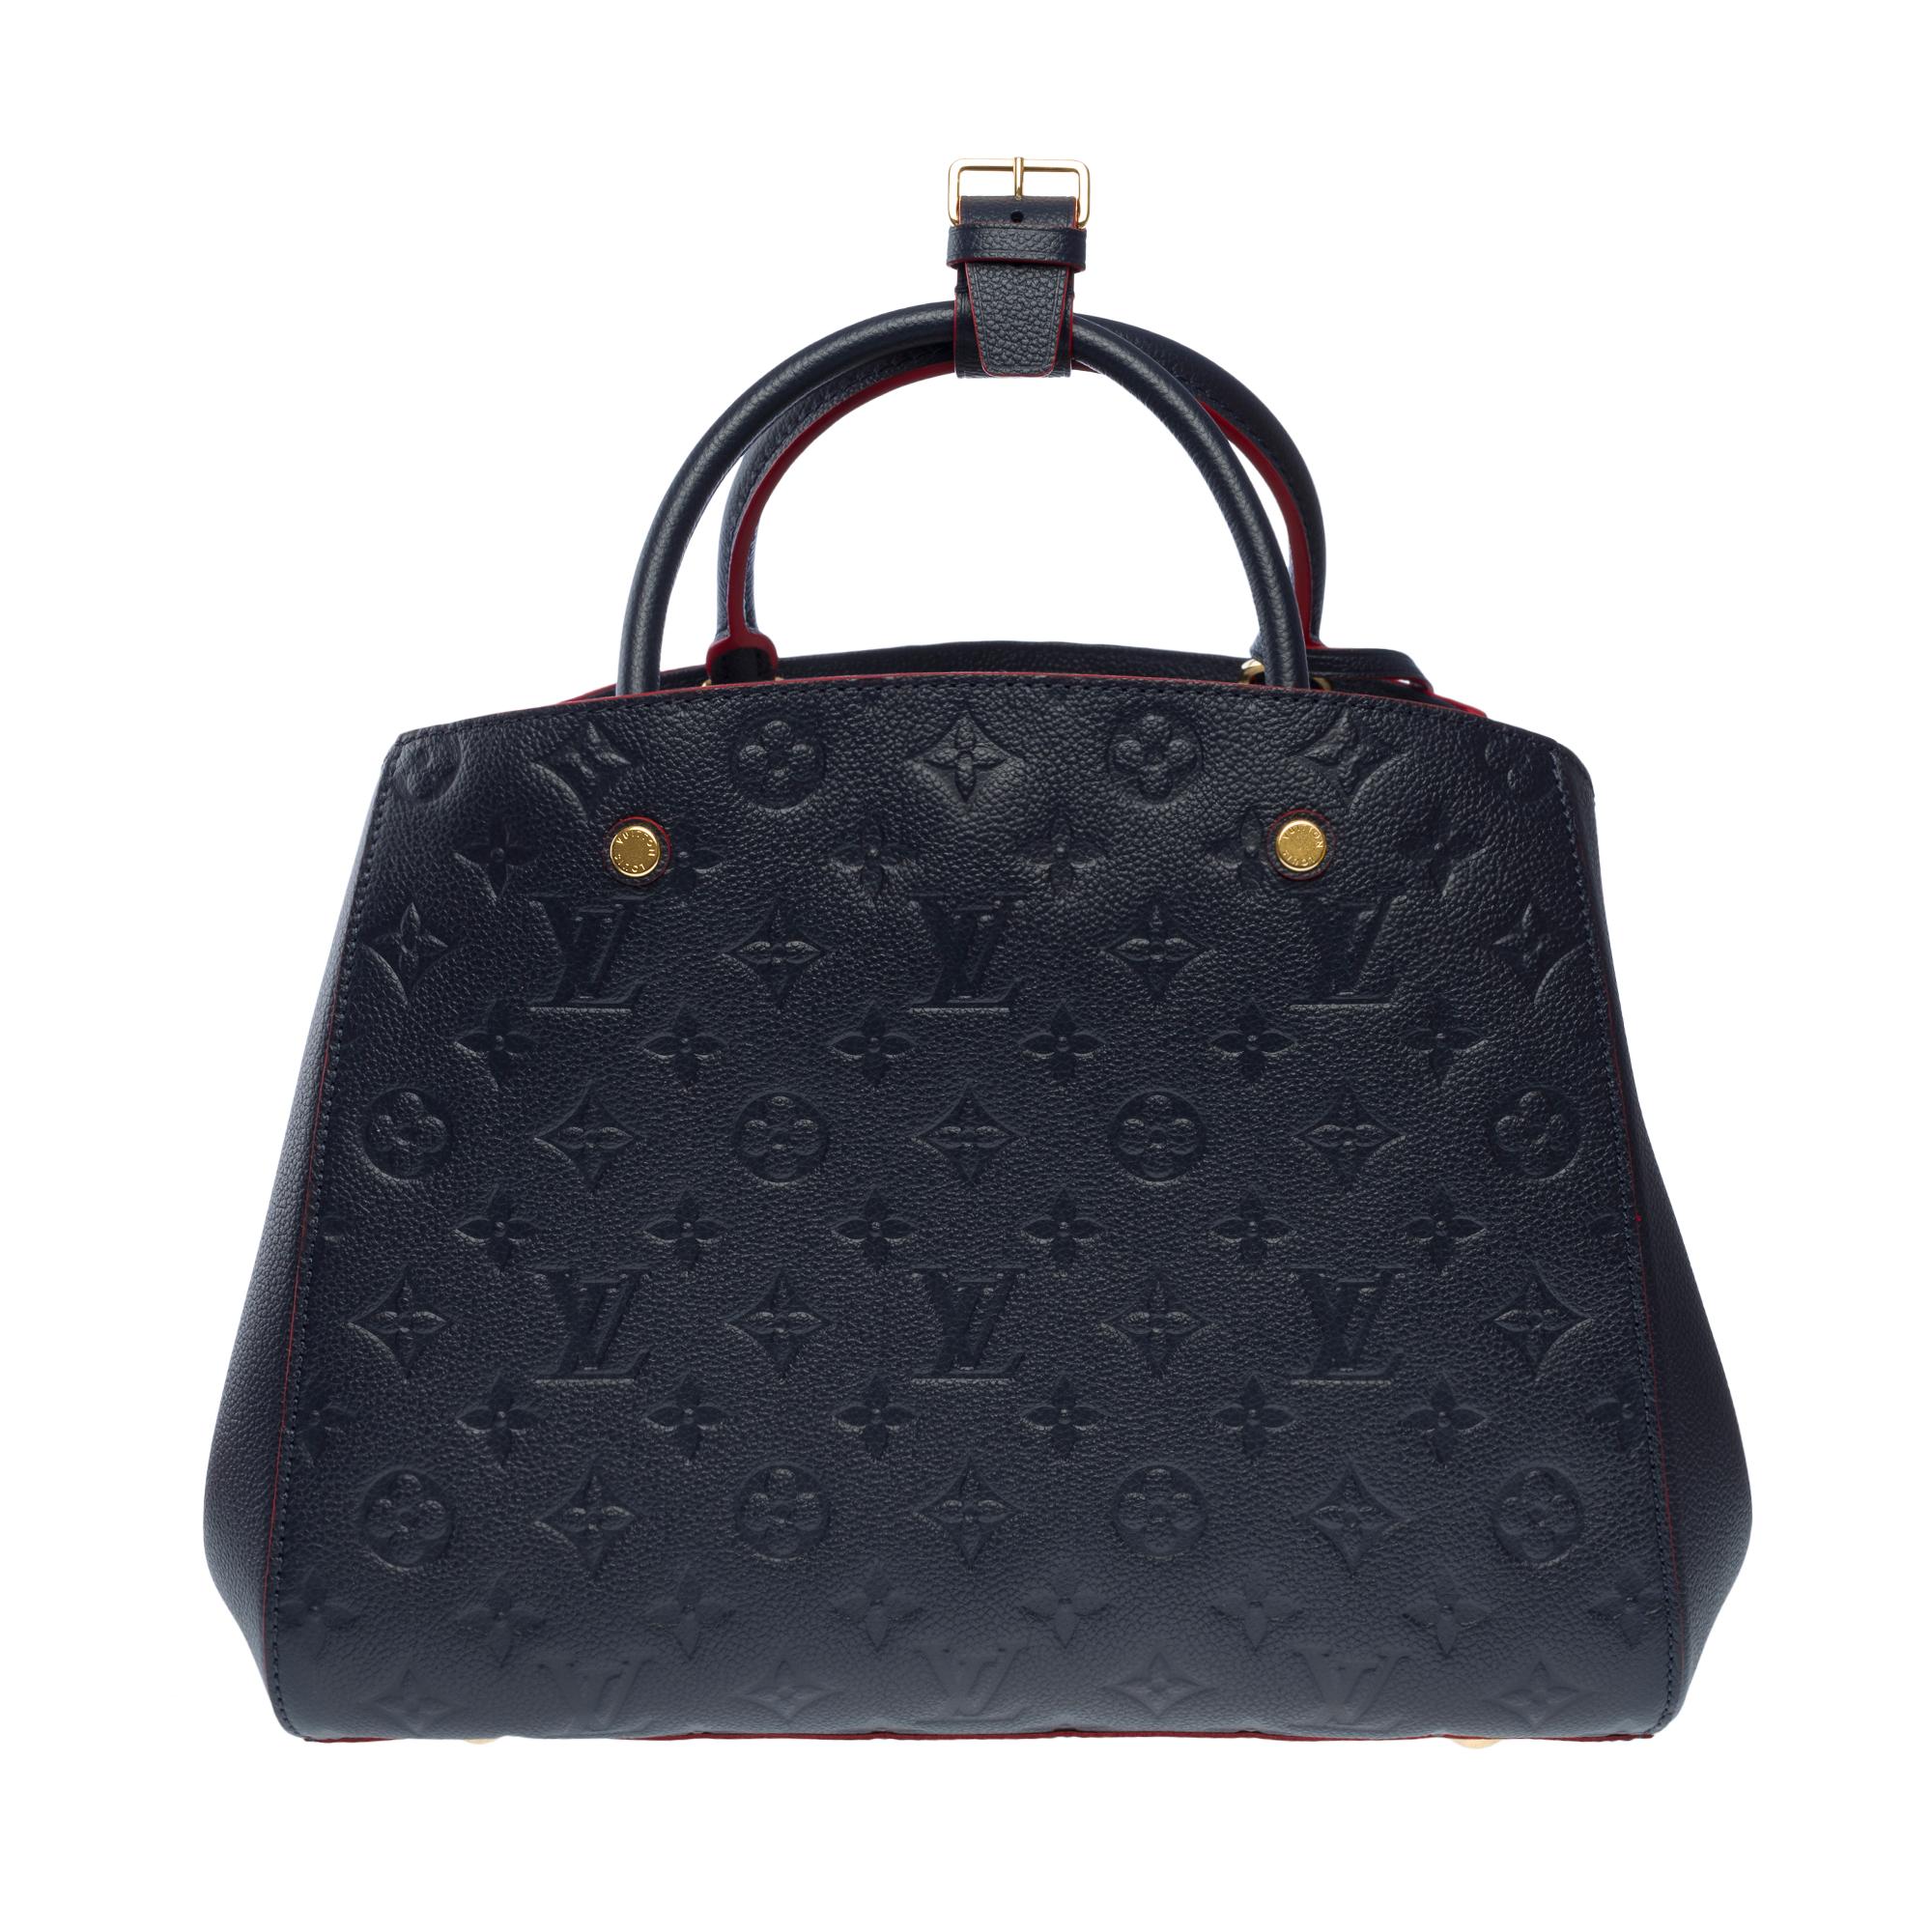 Orange Louis Vuitton Montaigne MM handbag strap in blue/red monogram leather , GHW